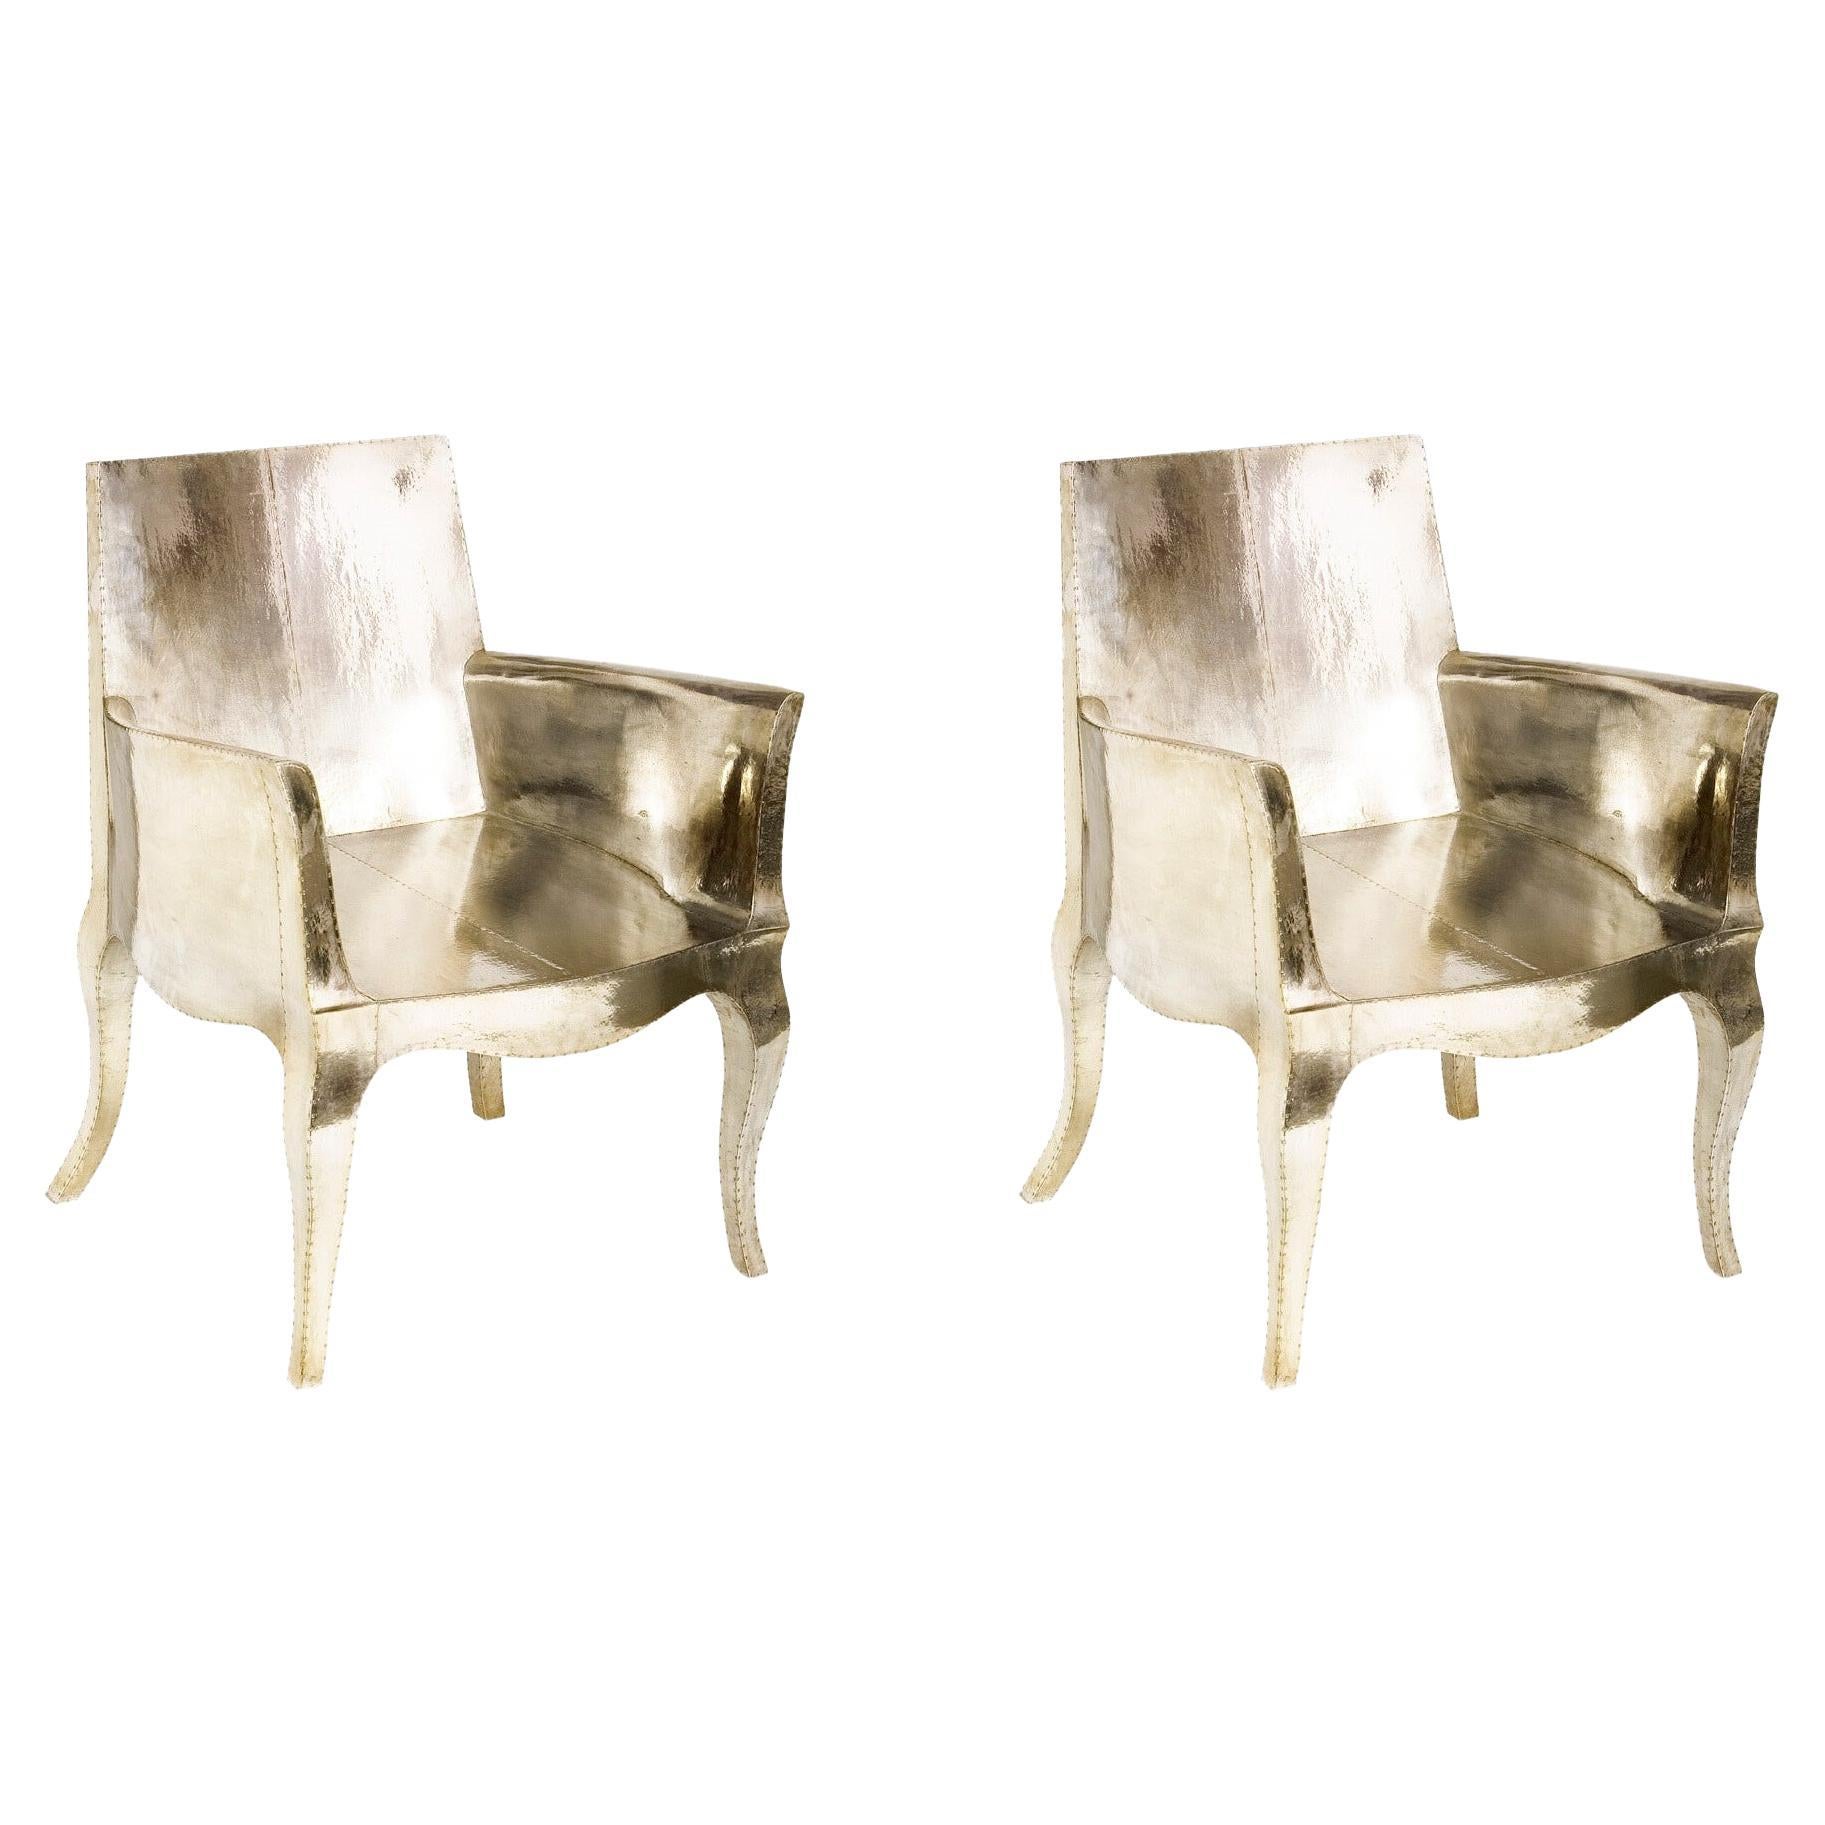 Paire de chaises de salle à manger Art nouveau conçues par Paul Mathieu pour Stephanie Odegard